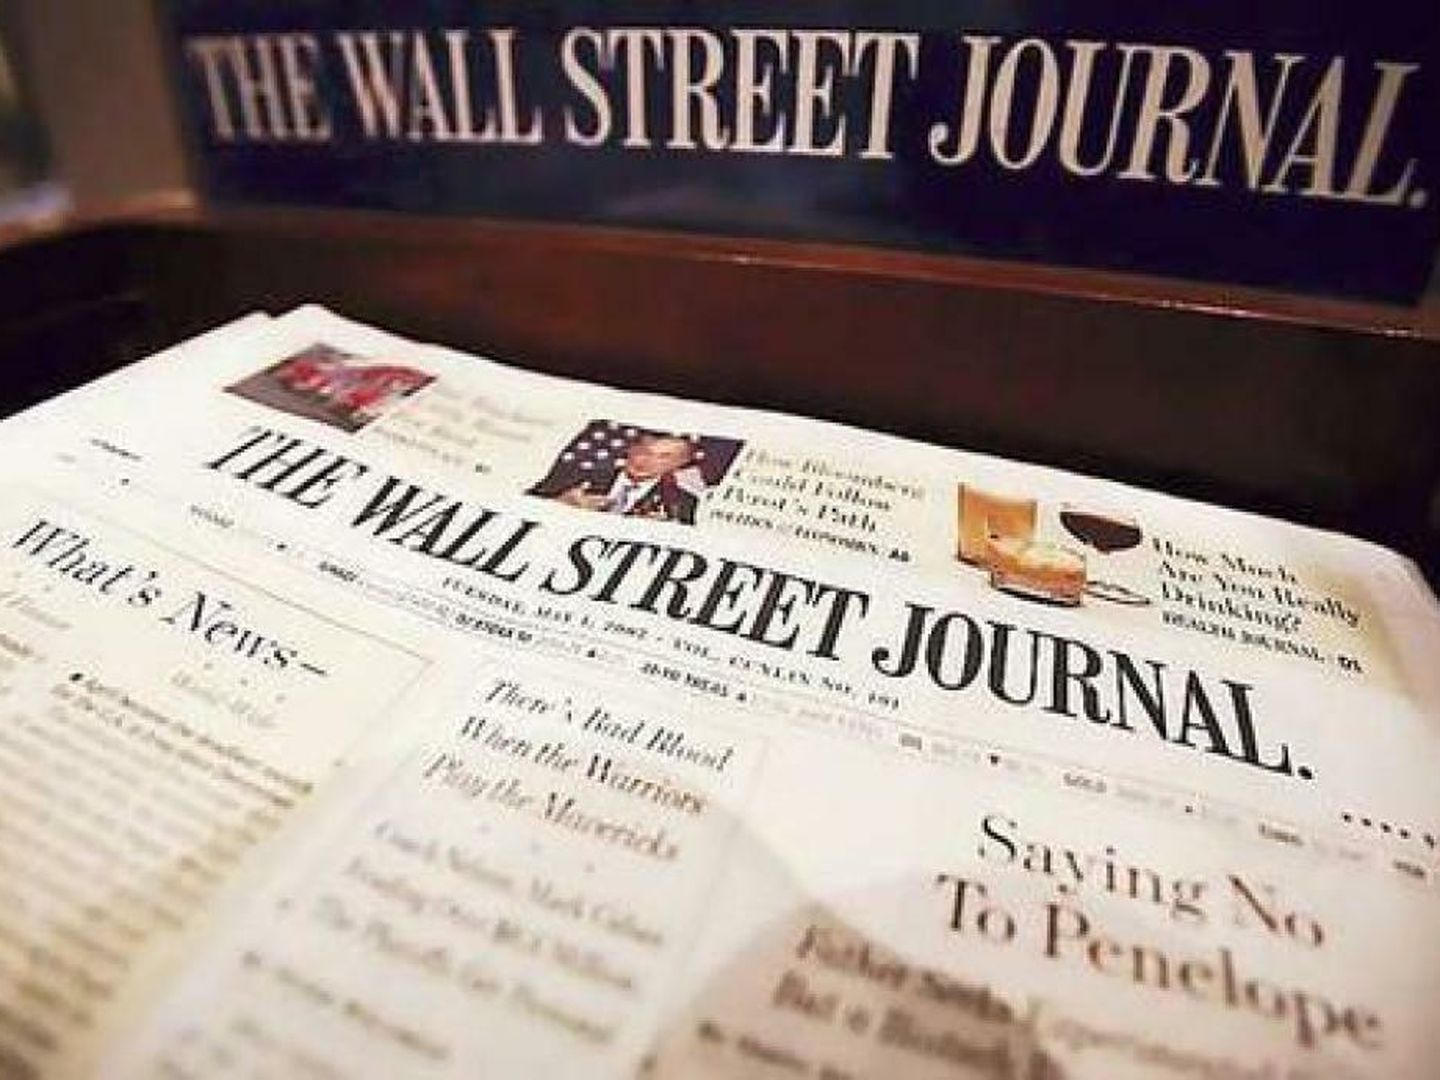 Imagen de un ejemplar de The Wall Street Journal